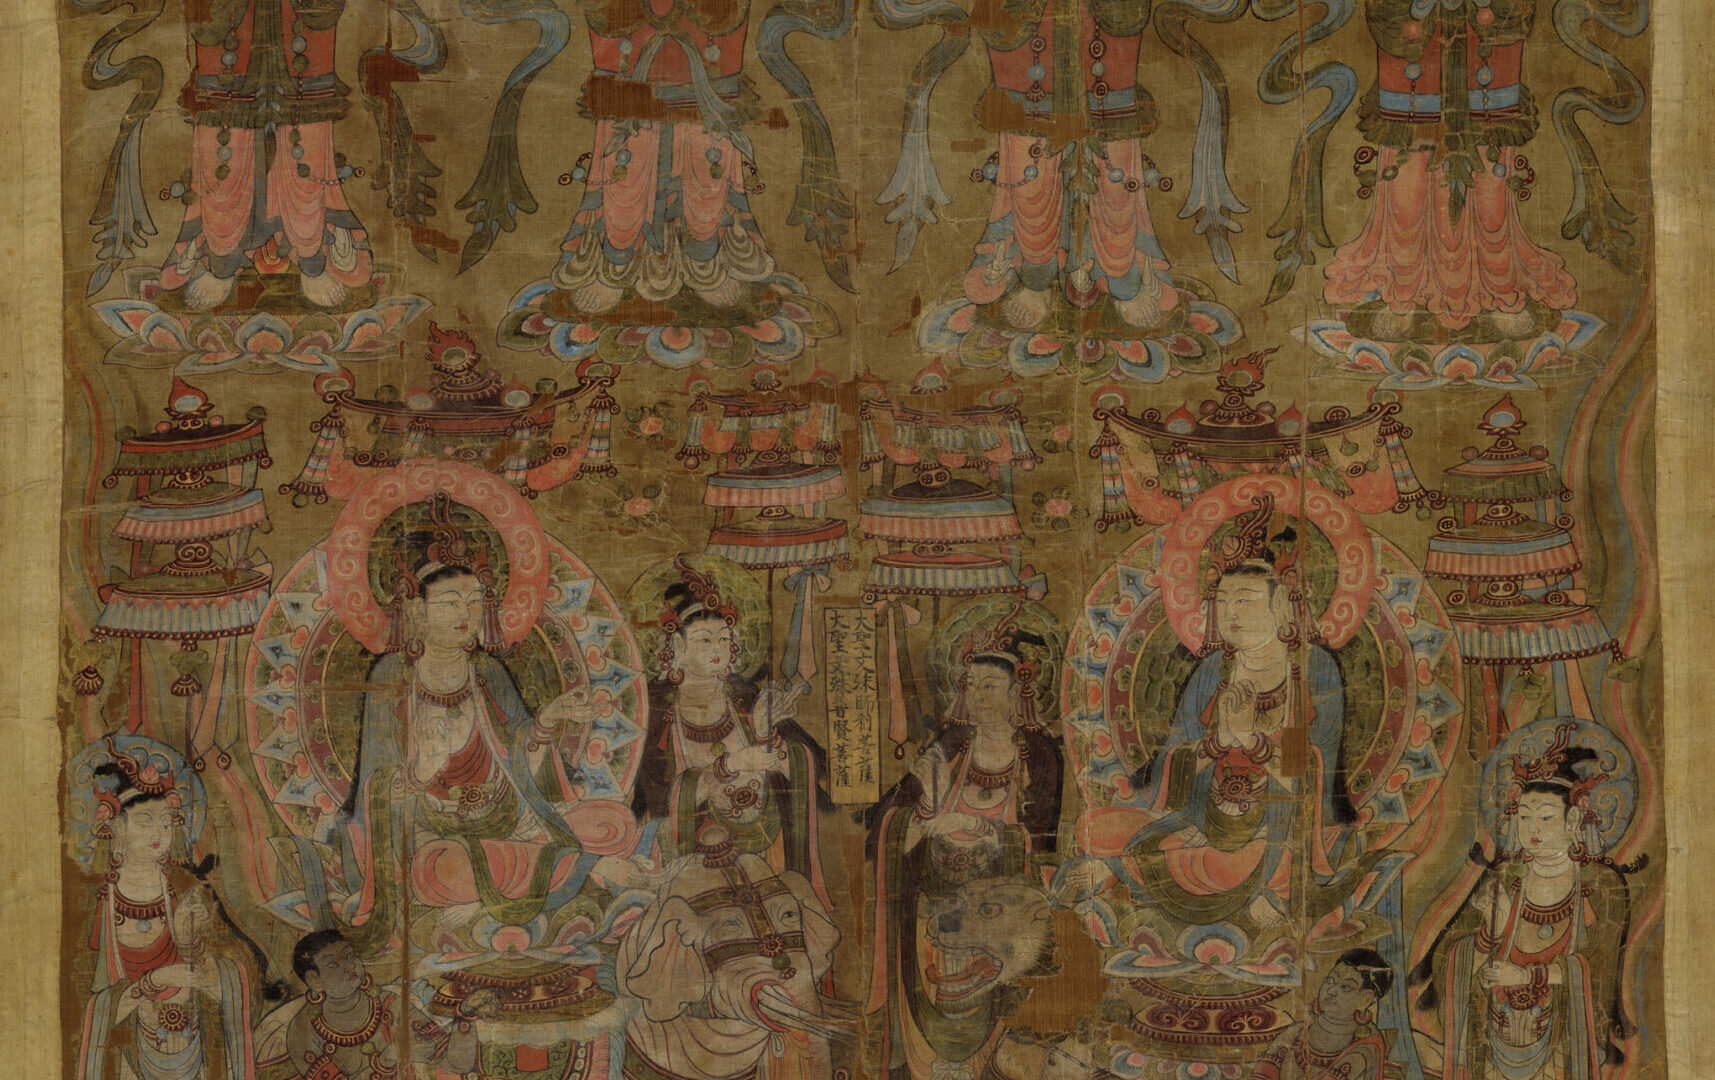 Painted banner image of the bodhisattvas Samantabhadra, Mañjuśrī, and four forms of Avalokiteśvara.